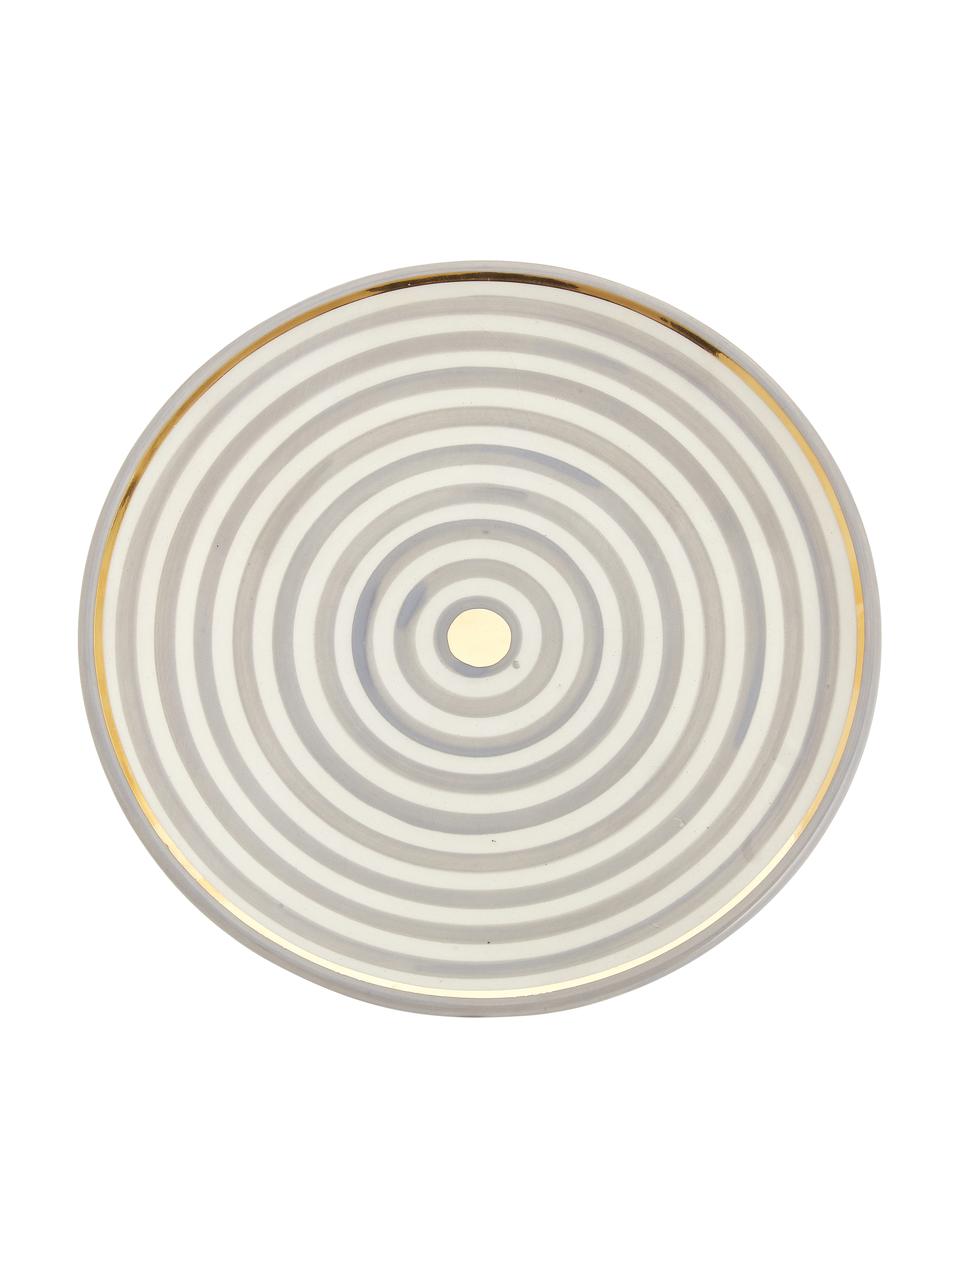 Plato llano artesanal Assiette, estilo marroquí, Cerámica, Gris claro, crema, oro, Ø 26 x Al 2 cm